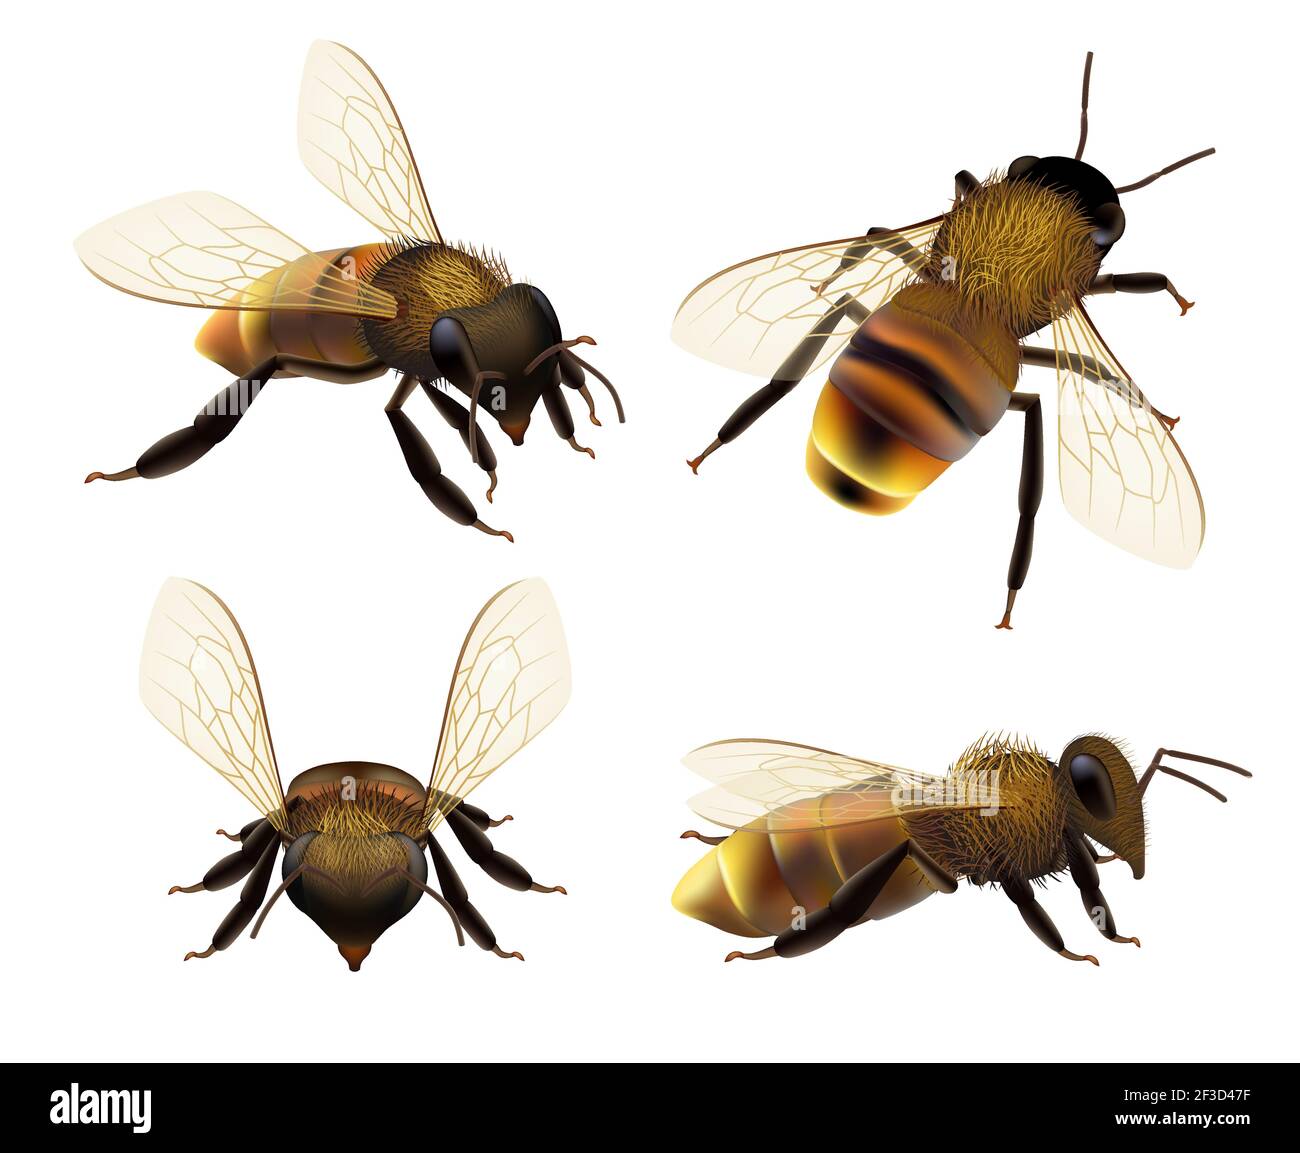 Abeille réaliste. Faune insecte abeille mouche danger guêpe insectes pollens bestioles éco produit naturel collection de vecteurs Illustration de Vecteur